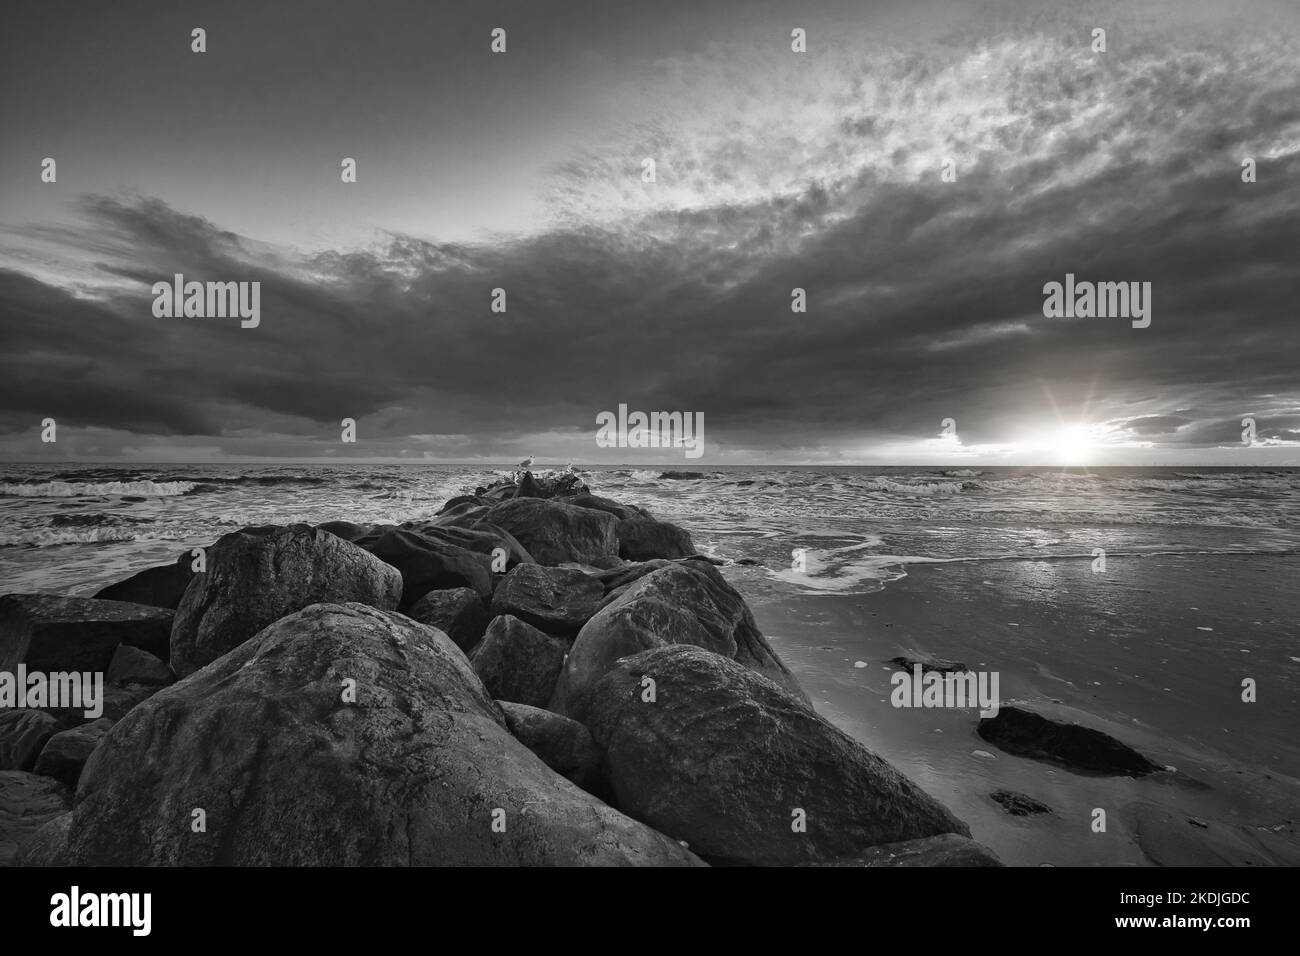 Tramonto sulla spiaggia in Danimarca in bianco e nero. Pietra groyne in primo piano. Passeggiata sulla costa nella sabbia. Paesaggio foto sul mare Foto Stock